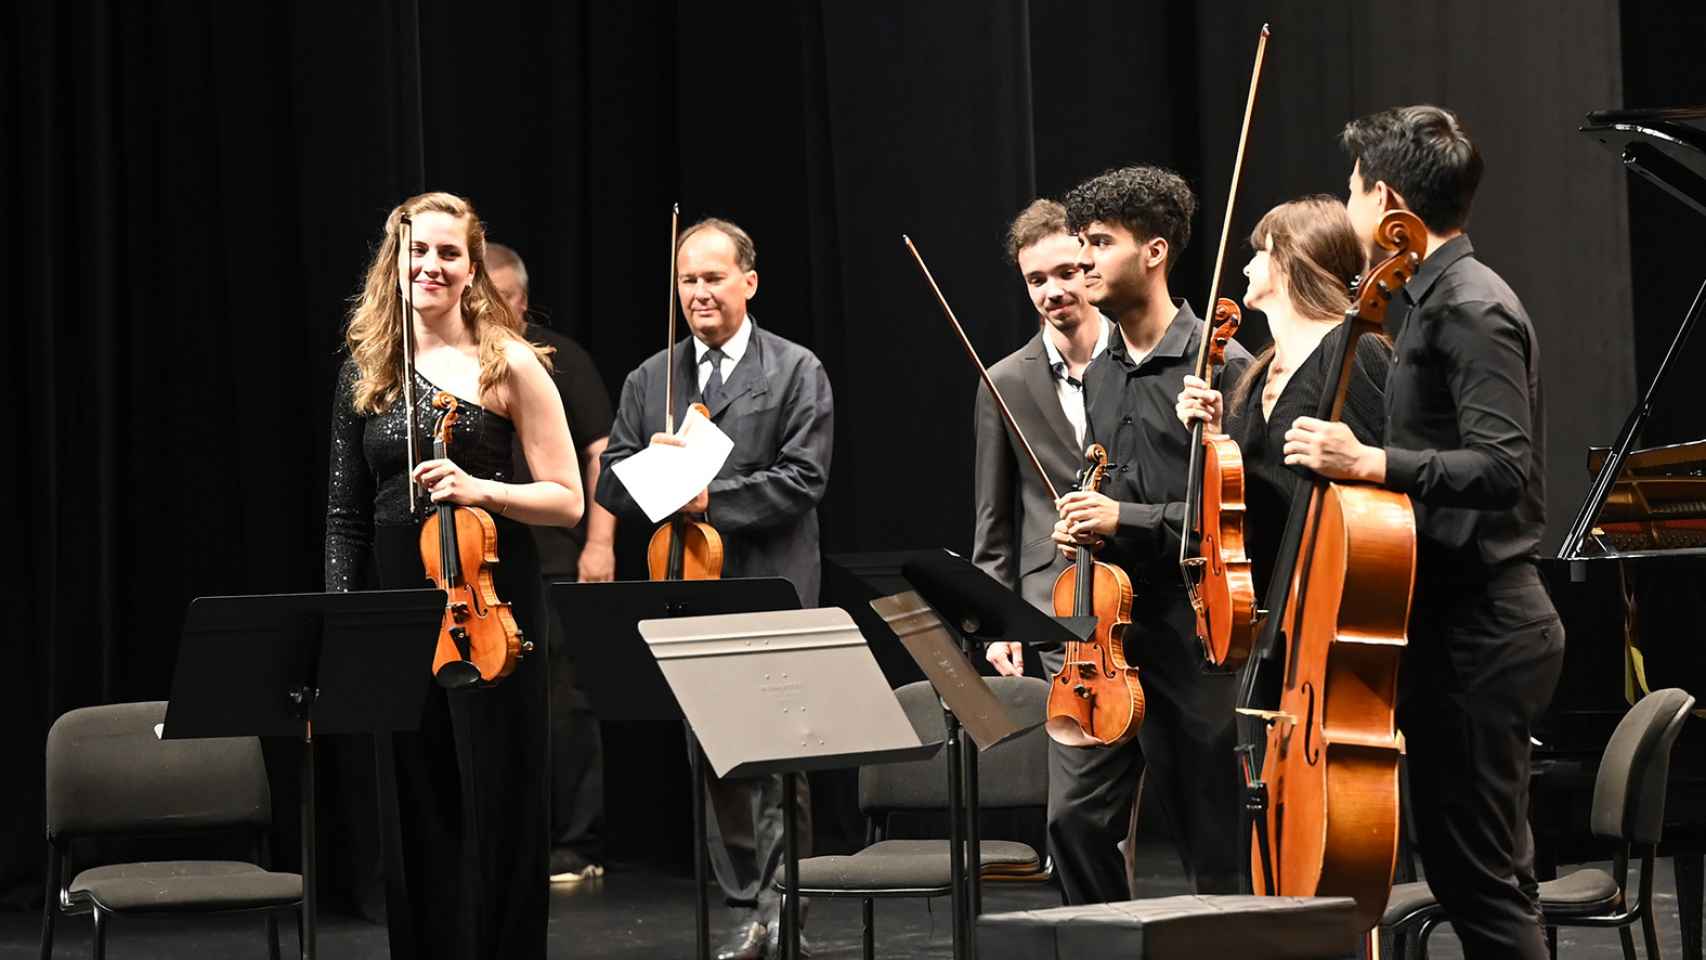 La violinista Julia Schuller, junto a otros músicos de la Orquesta Freixenet, recibe la ovación del público tras intepretar 'El retablo de Maese Pedro'. Foto: Elena Torcida